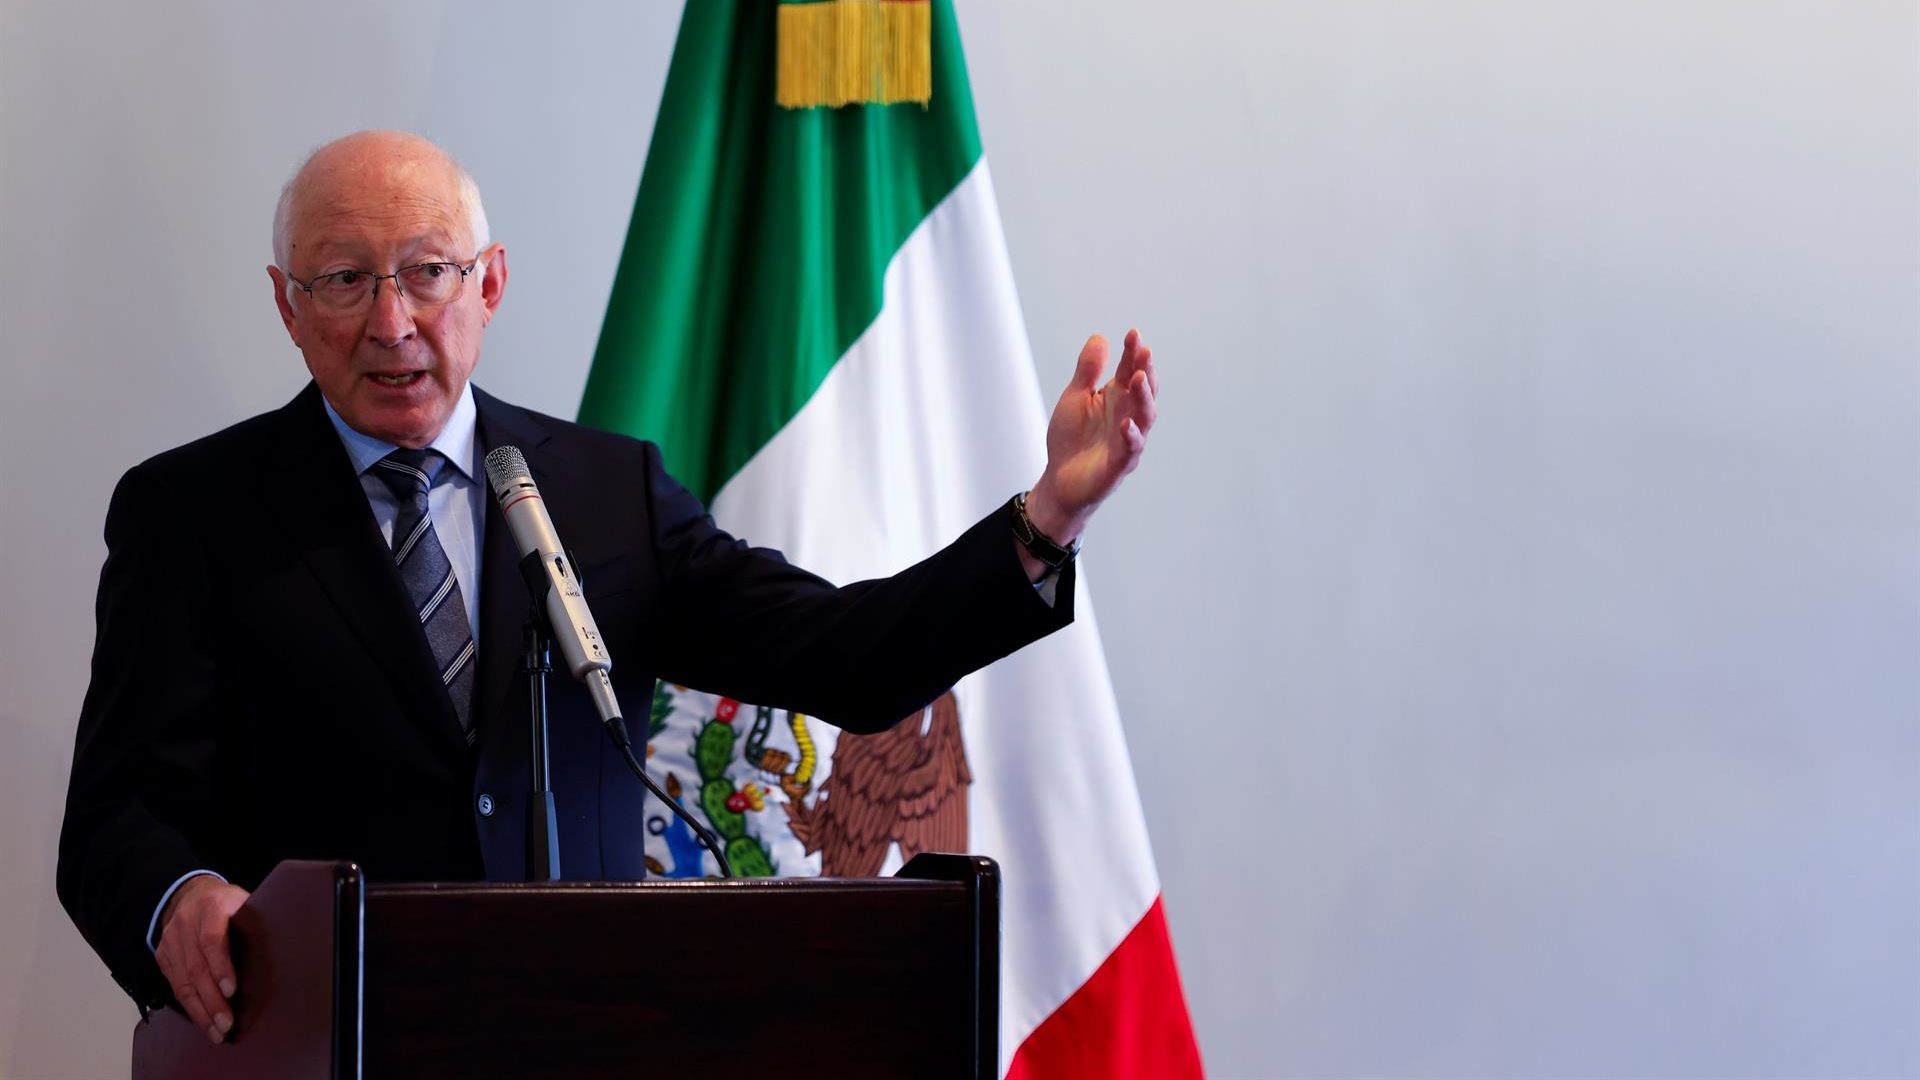 México y EU viven una nueva relación: embajador  Ken Salazar